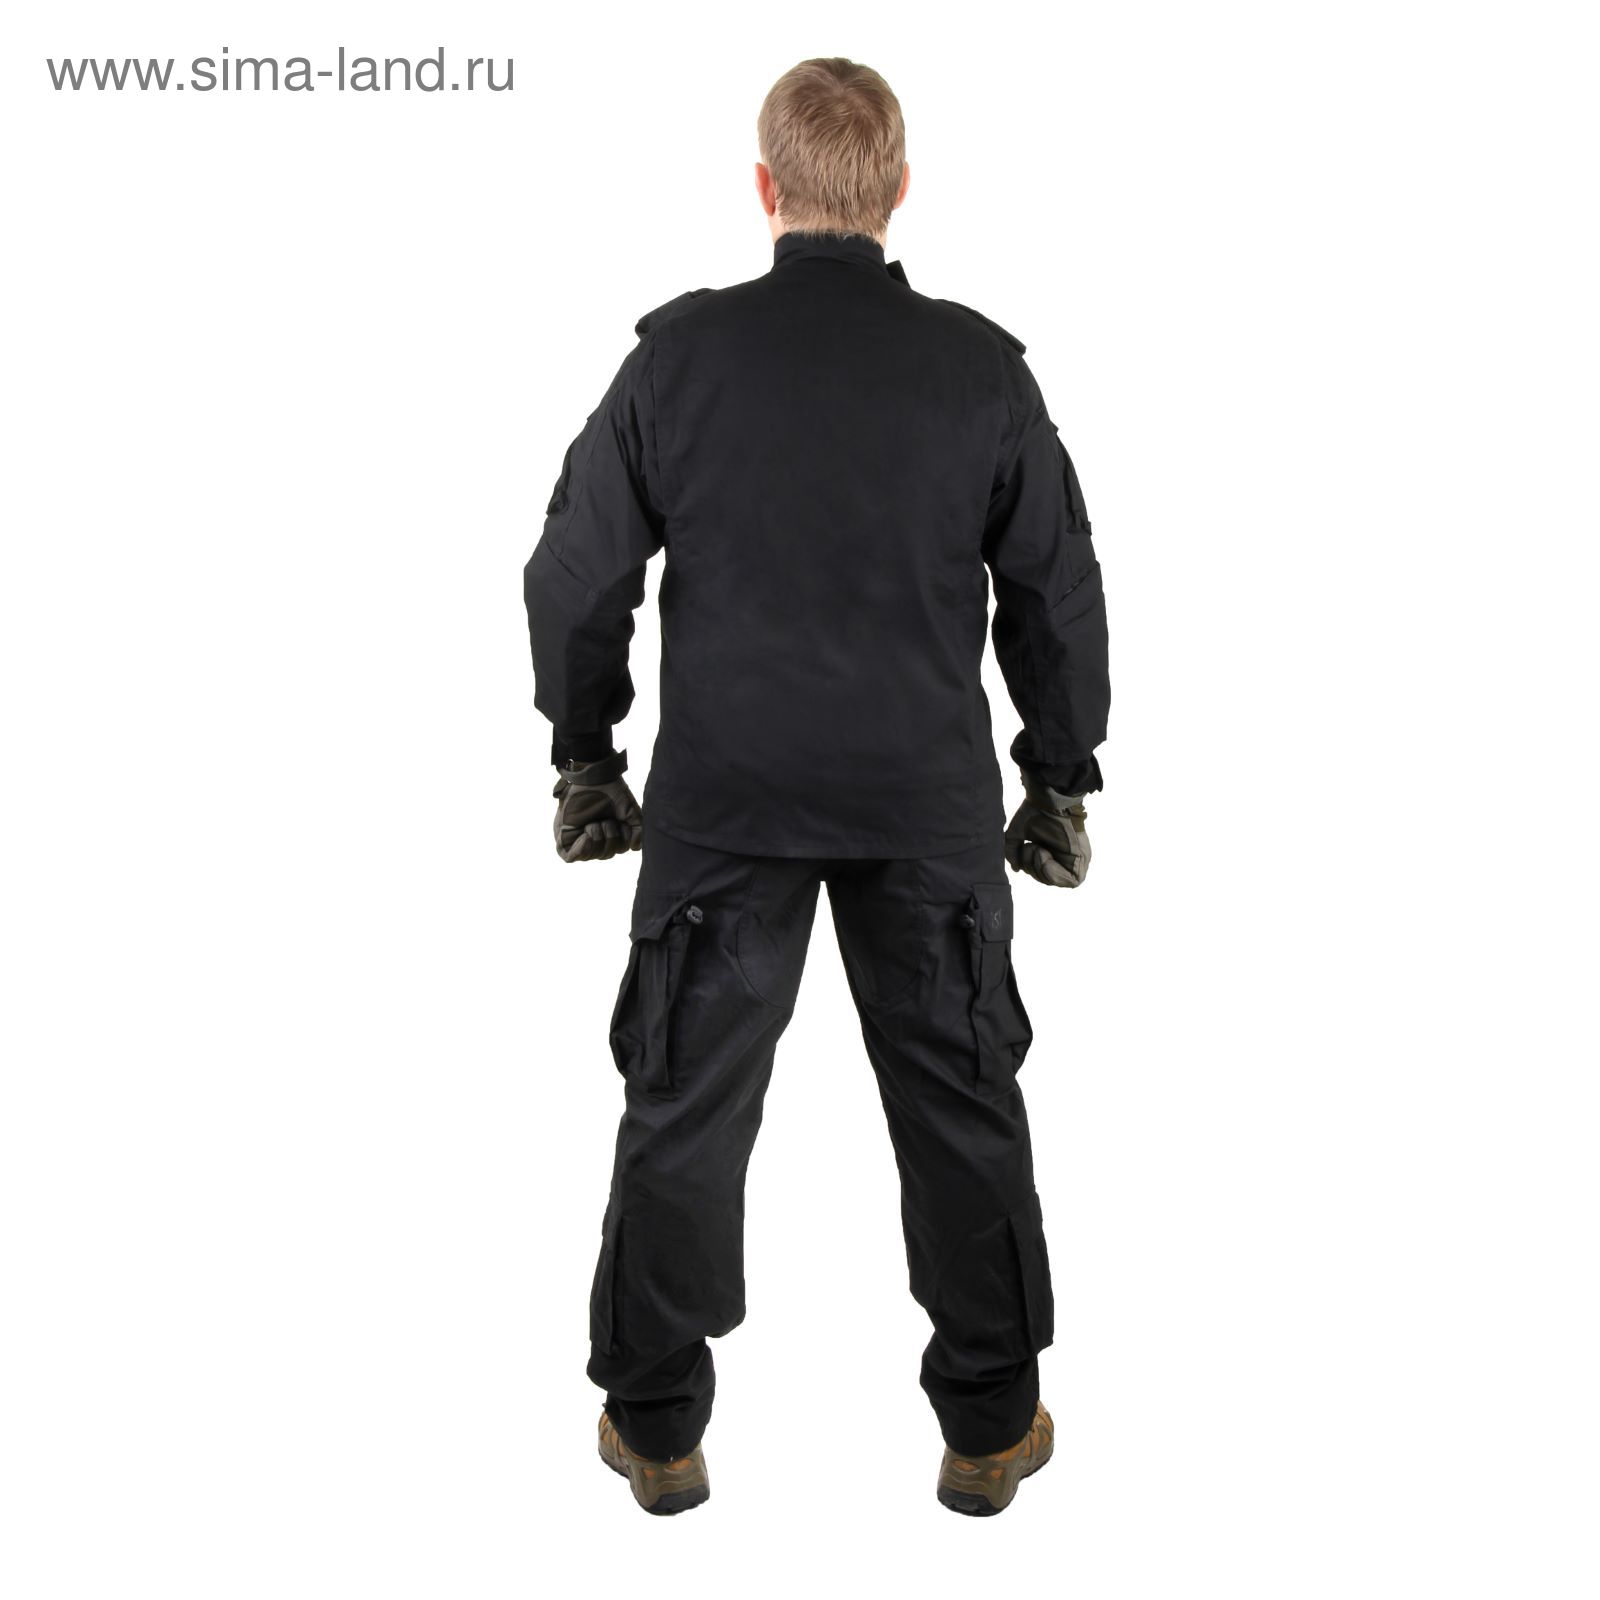 Костюм для спецназа летний МПА-04 (НАТО-1) черный, ткань Мираж-210 (52/4)